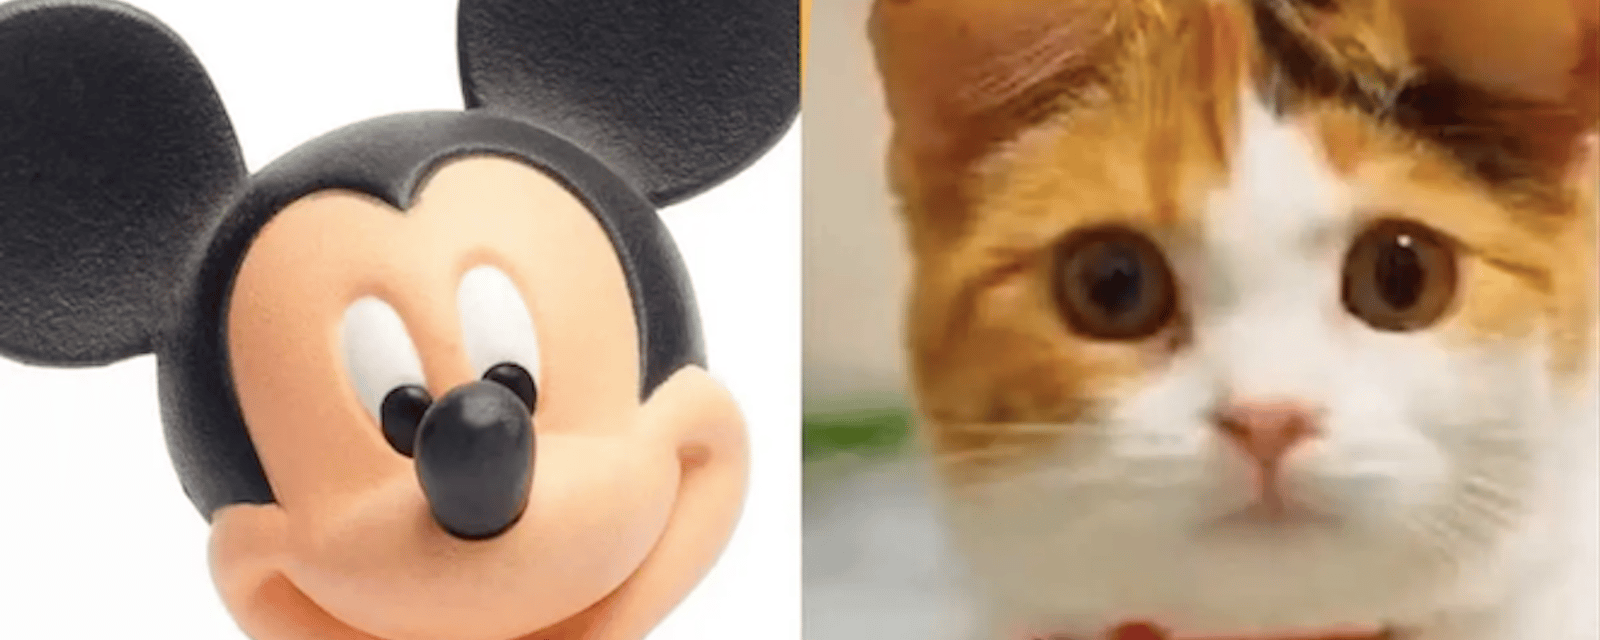 Une nouvelle mode cruelle en Chine: les oreilles de Mickey pour les chats et les chiens